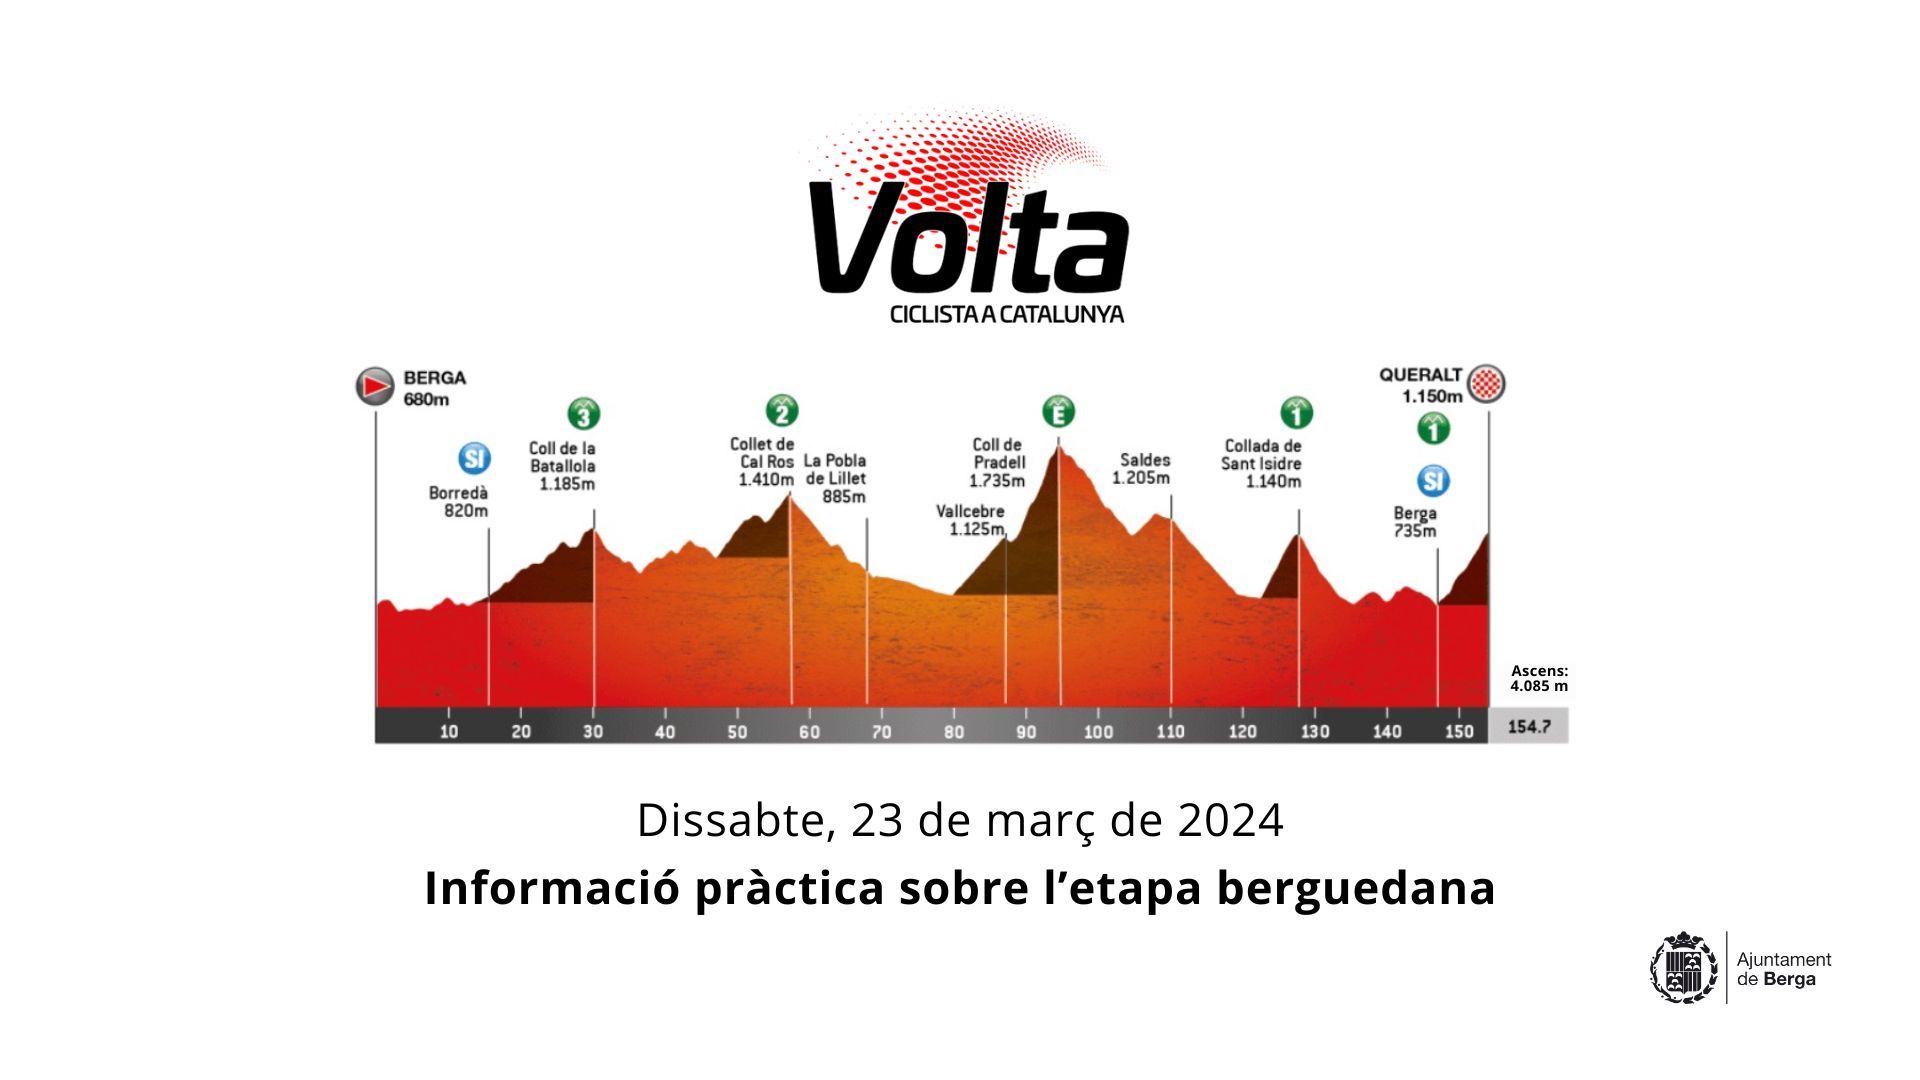 Berga acollirà l'inici i el final de la sisena etapa de la Volta a Catalunya que comportarà afectacions el dissabte 23 de març